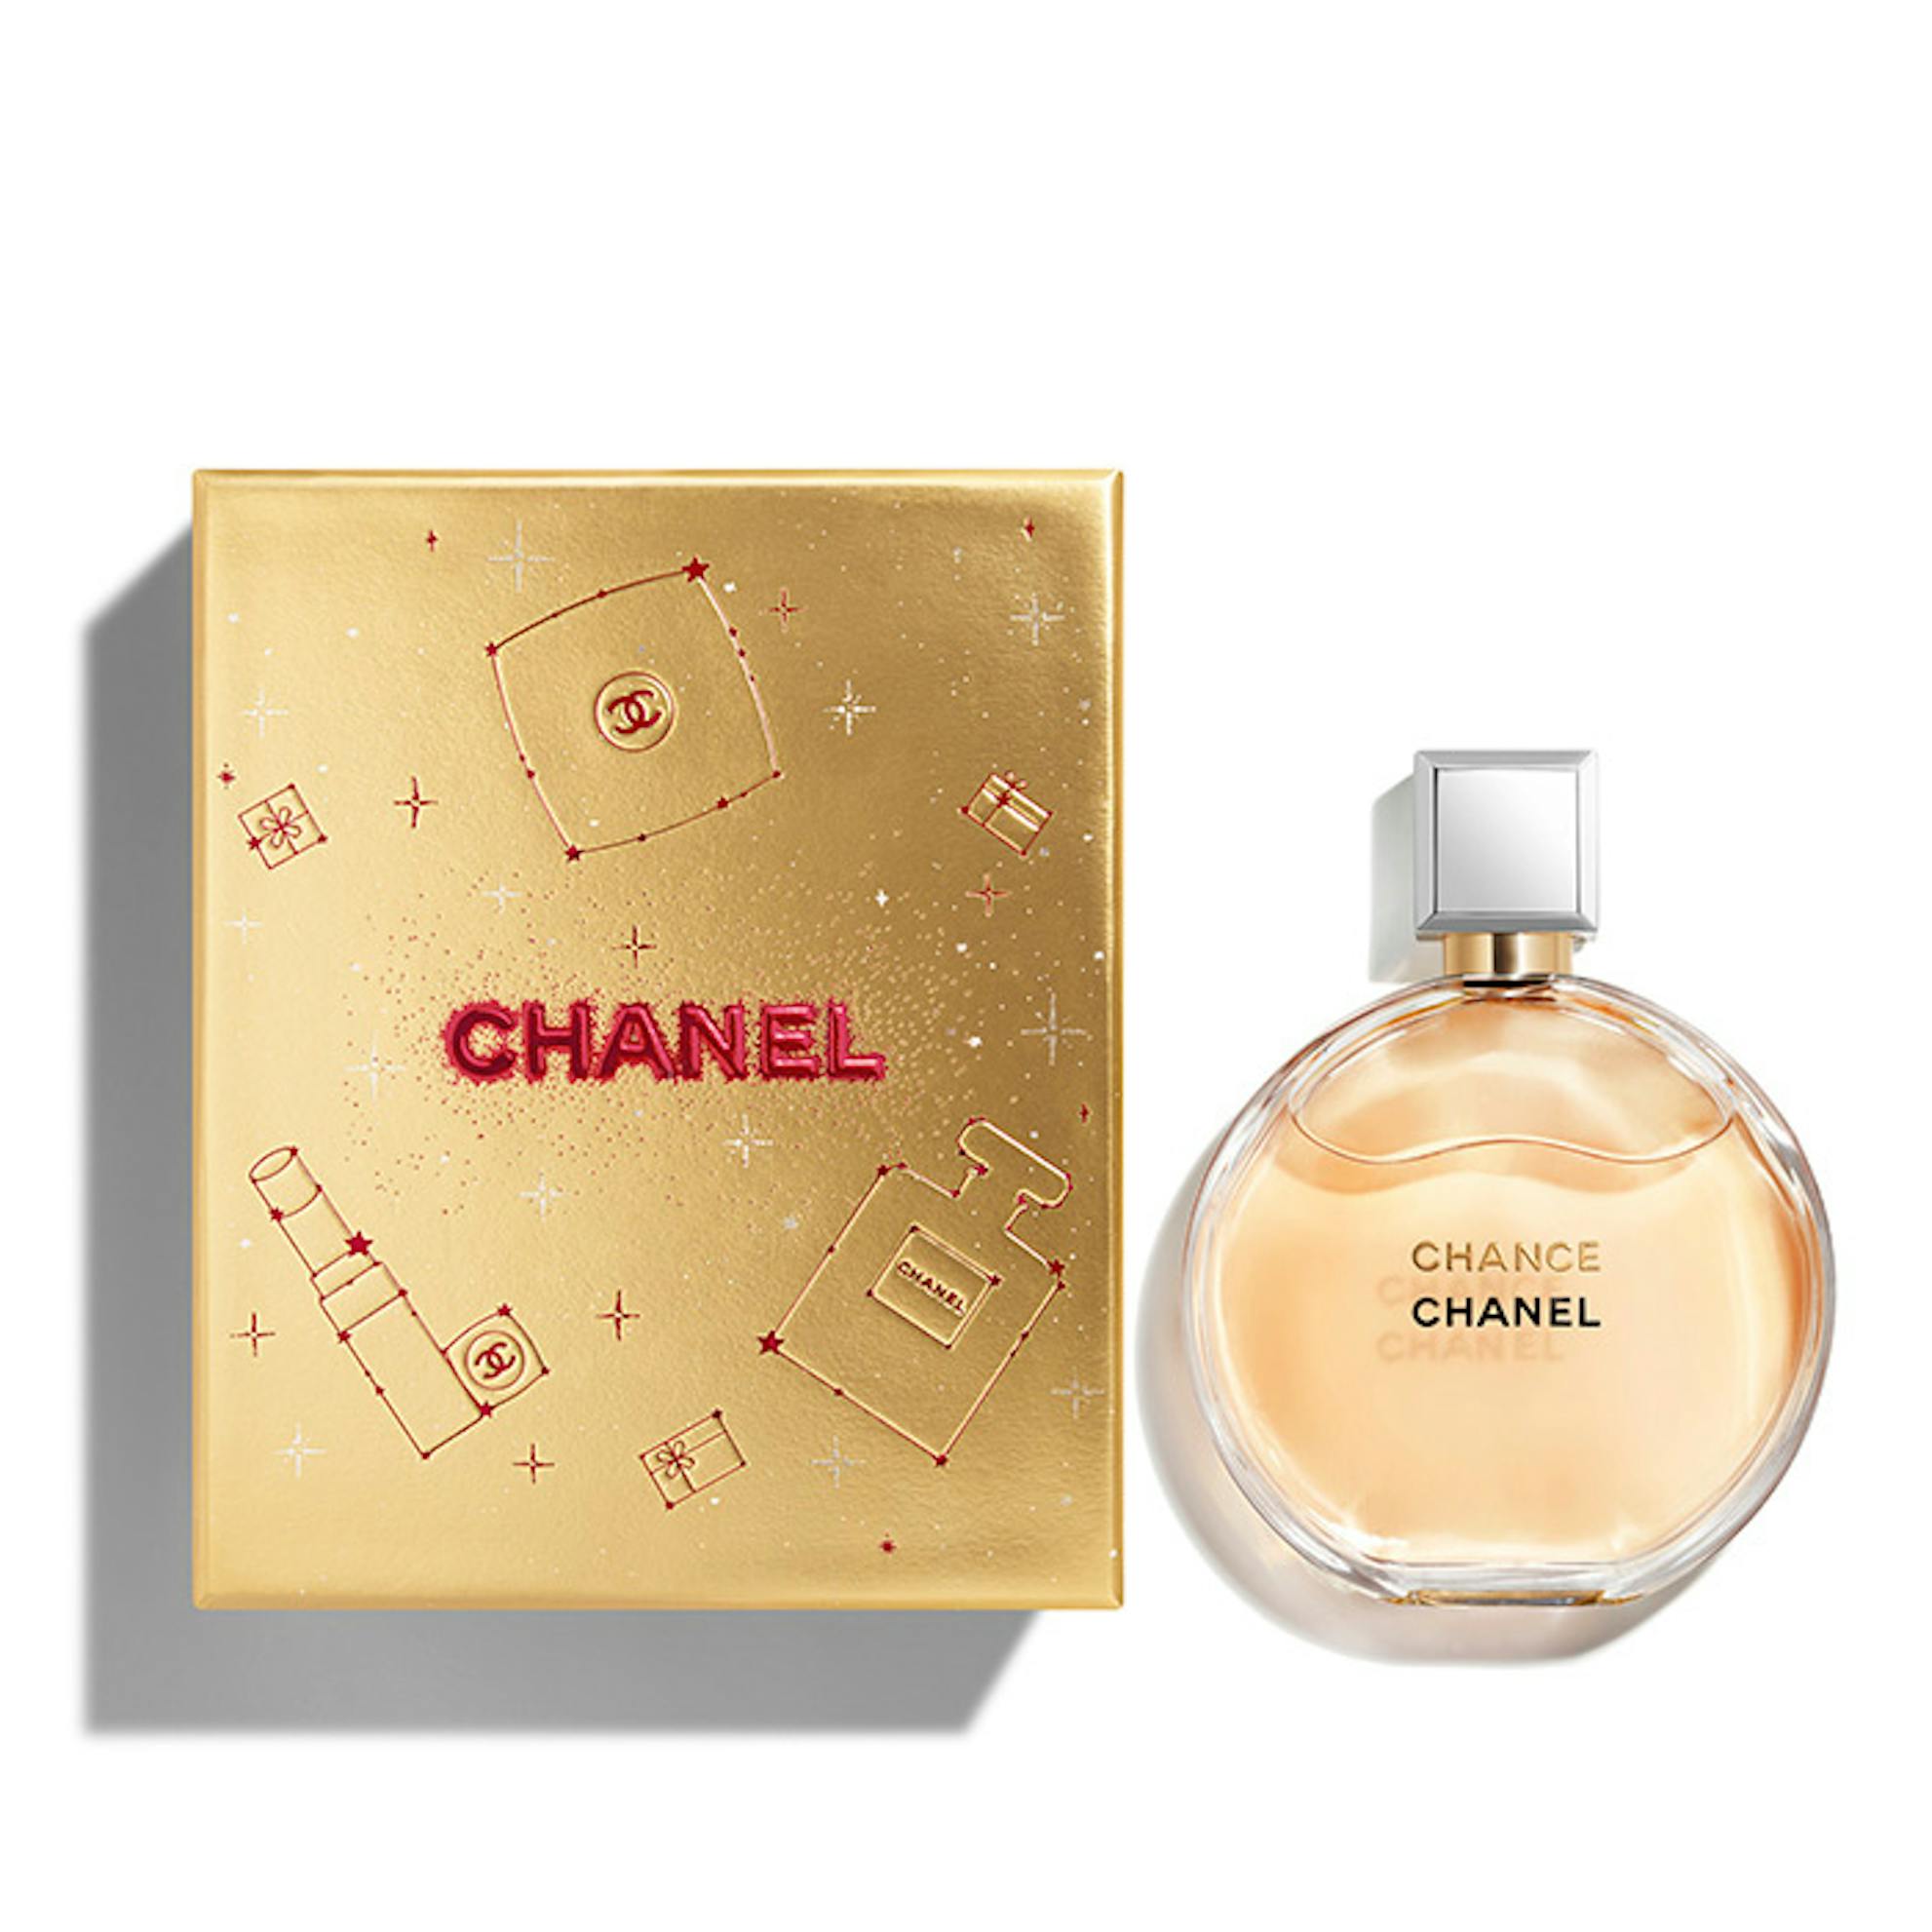 Chanel Chance - Eau De Toilette 150 ml